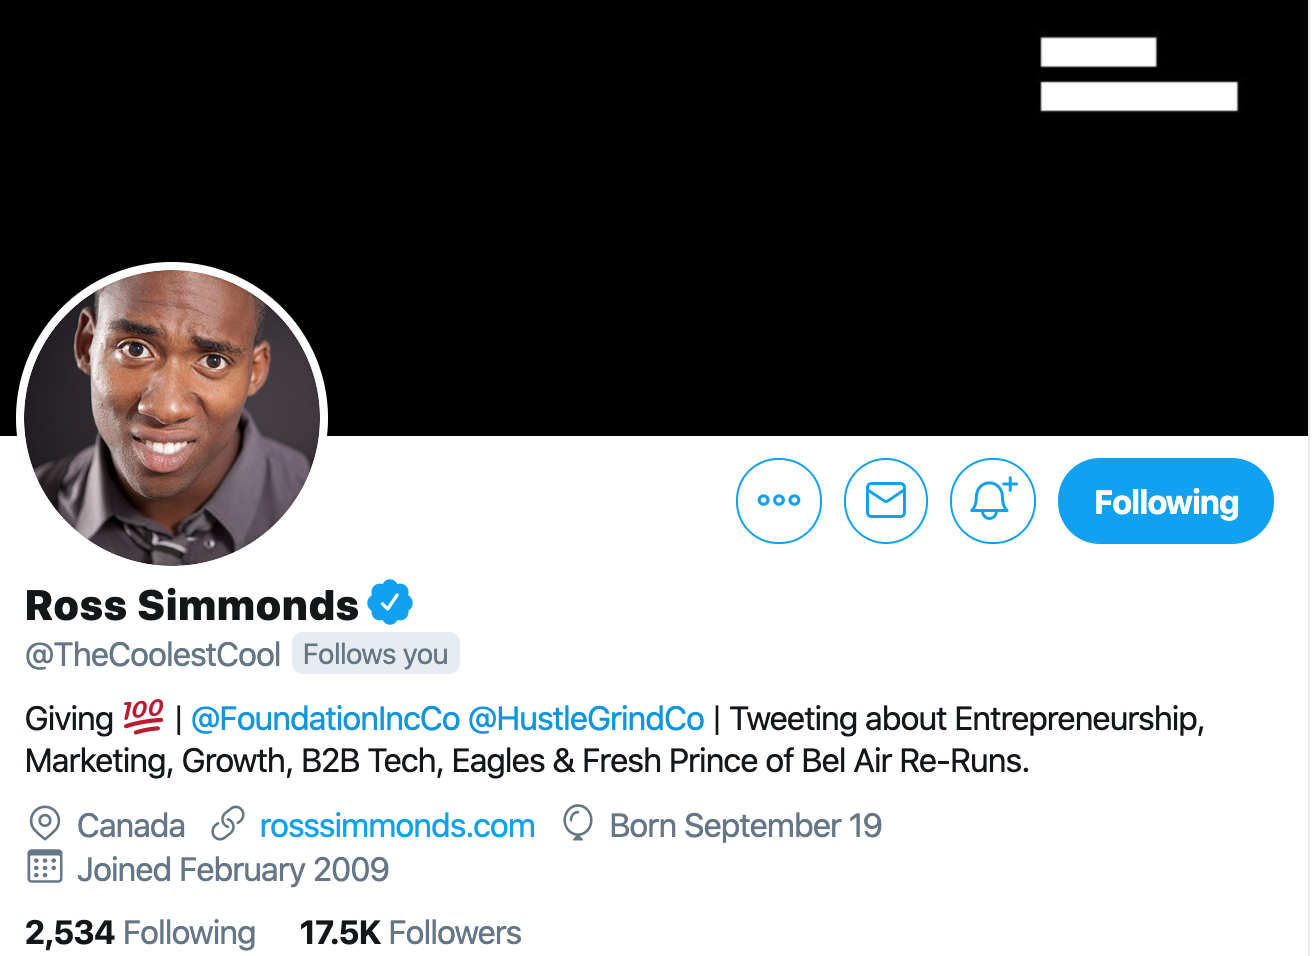 Ross Simmonds. Expert content marketer to follow on twitter